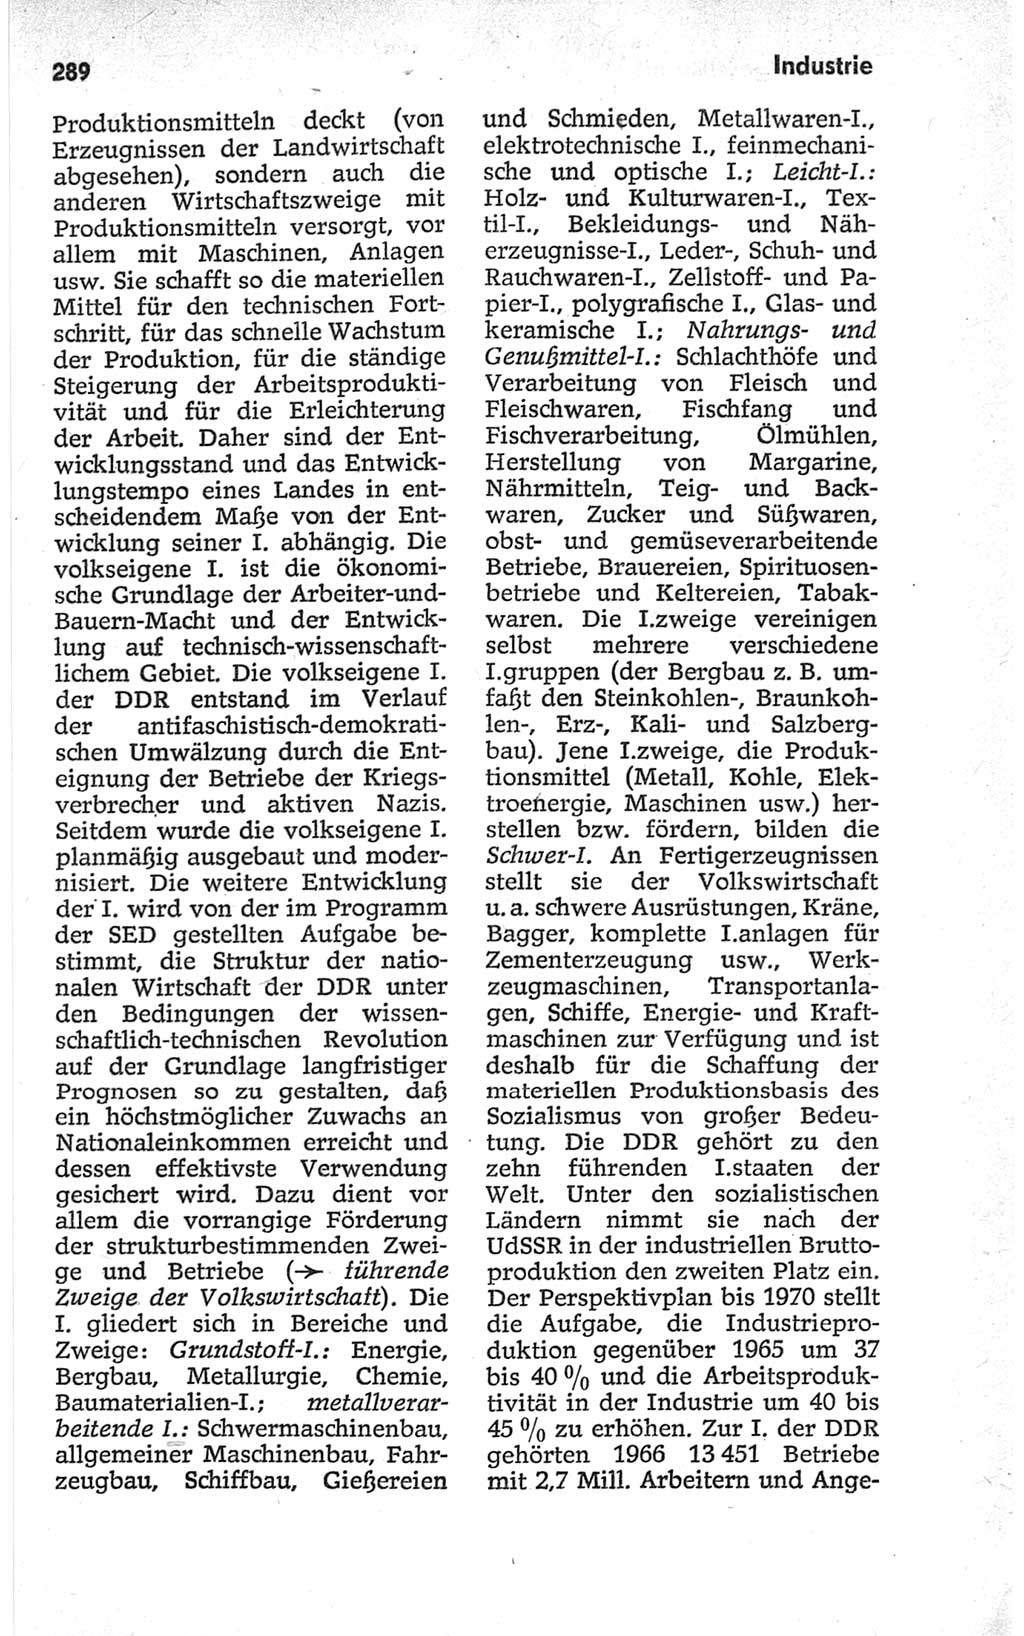 Kleines politisches Wörterbuch [Deutsche Demokratische Republik (DDR)] 1967, Seite 289 (Kl. pol. Wb. DDR 1967, S. 289)